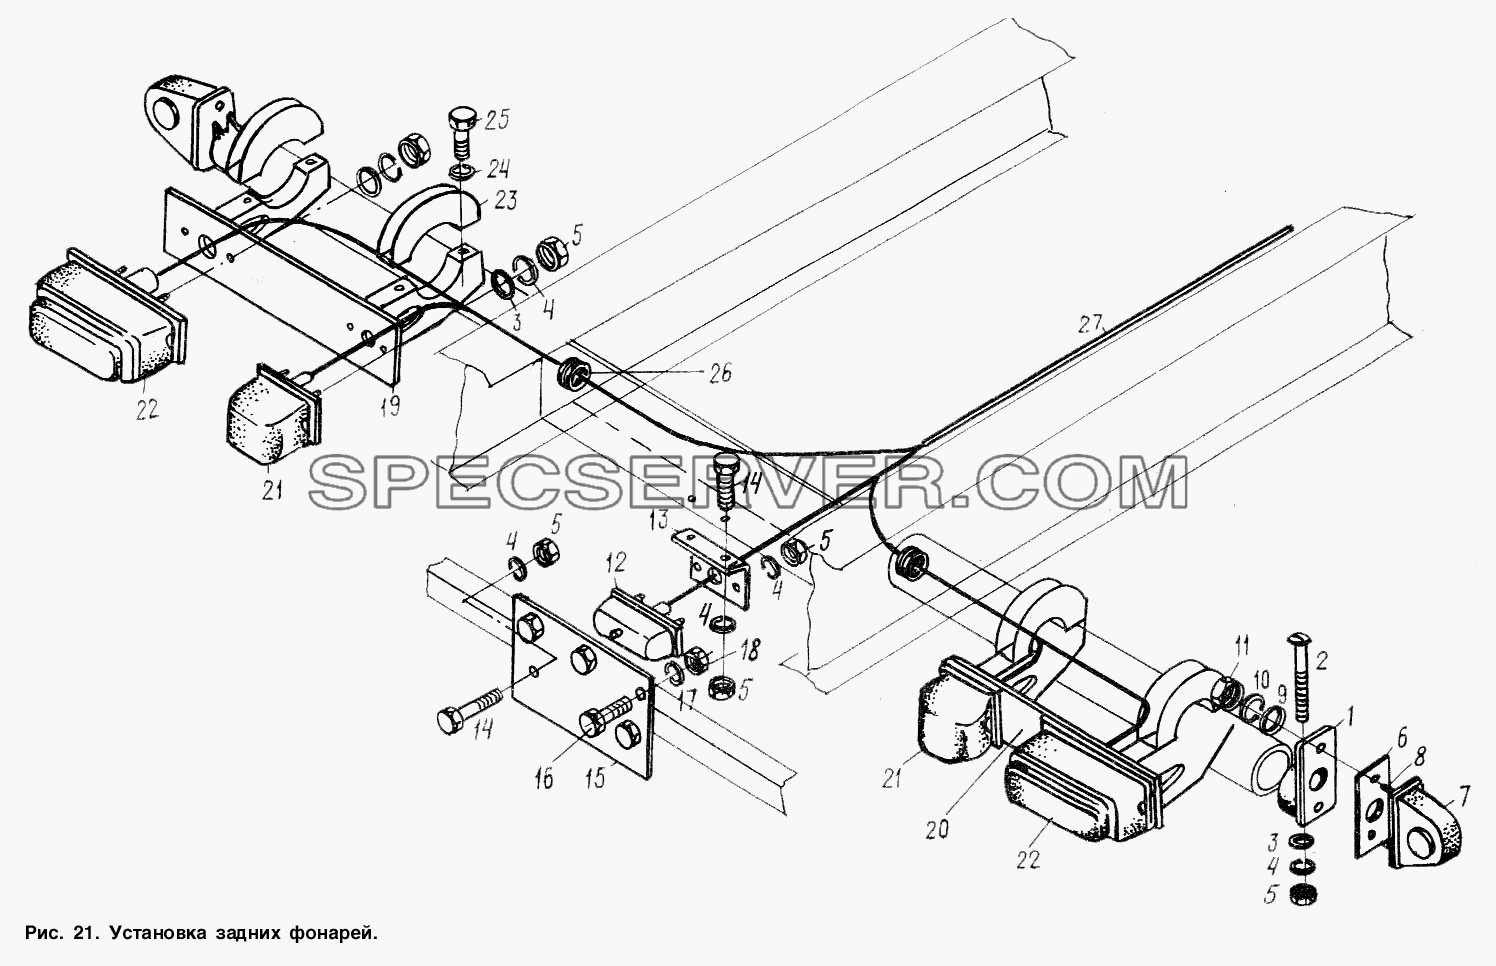 Установка задних фонарей для МАЗ-9506 (список запасных частей)